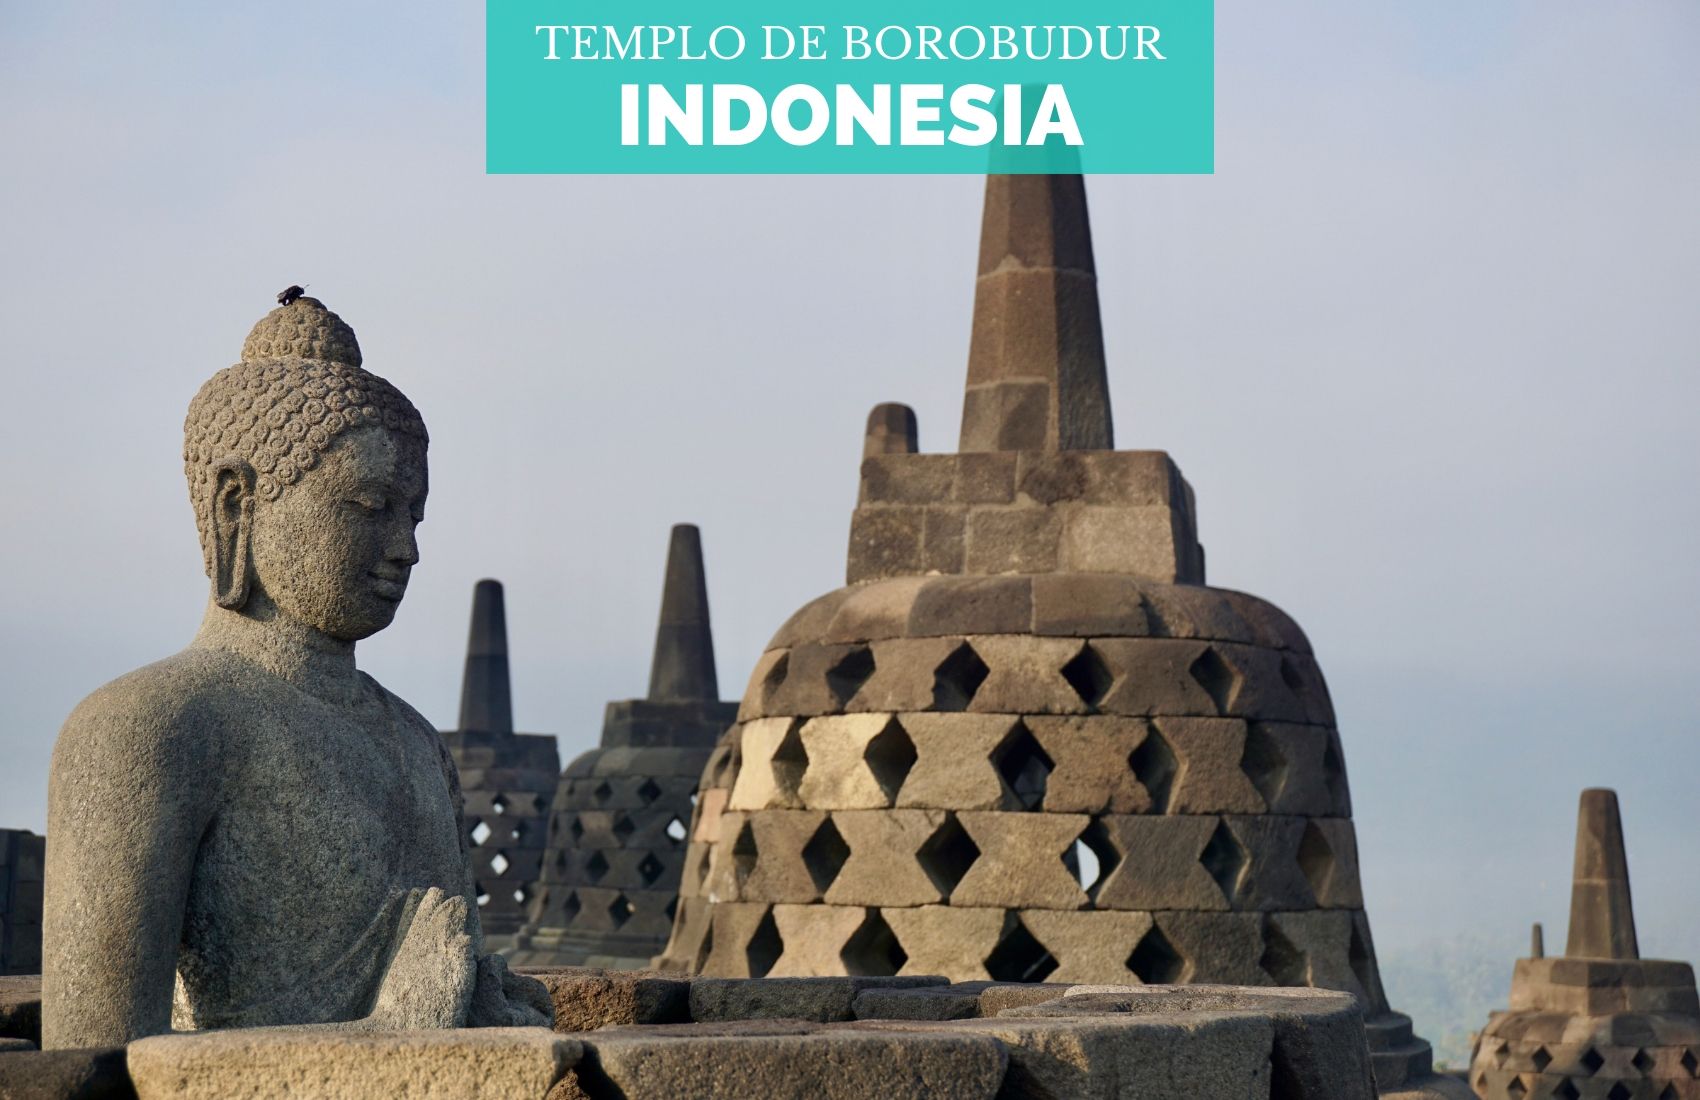 Templo de Borobudur: ¿Cómo llegar y qué ver?